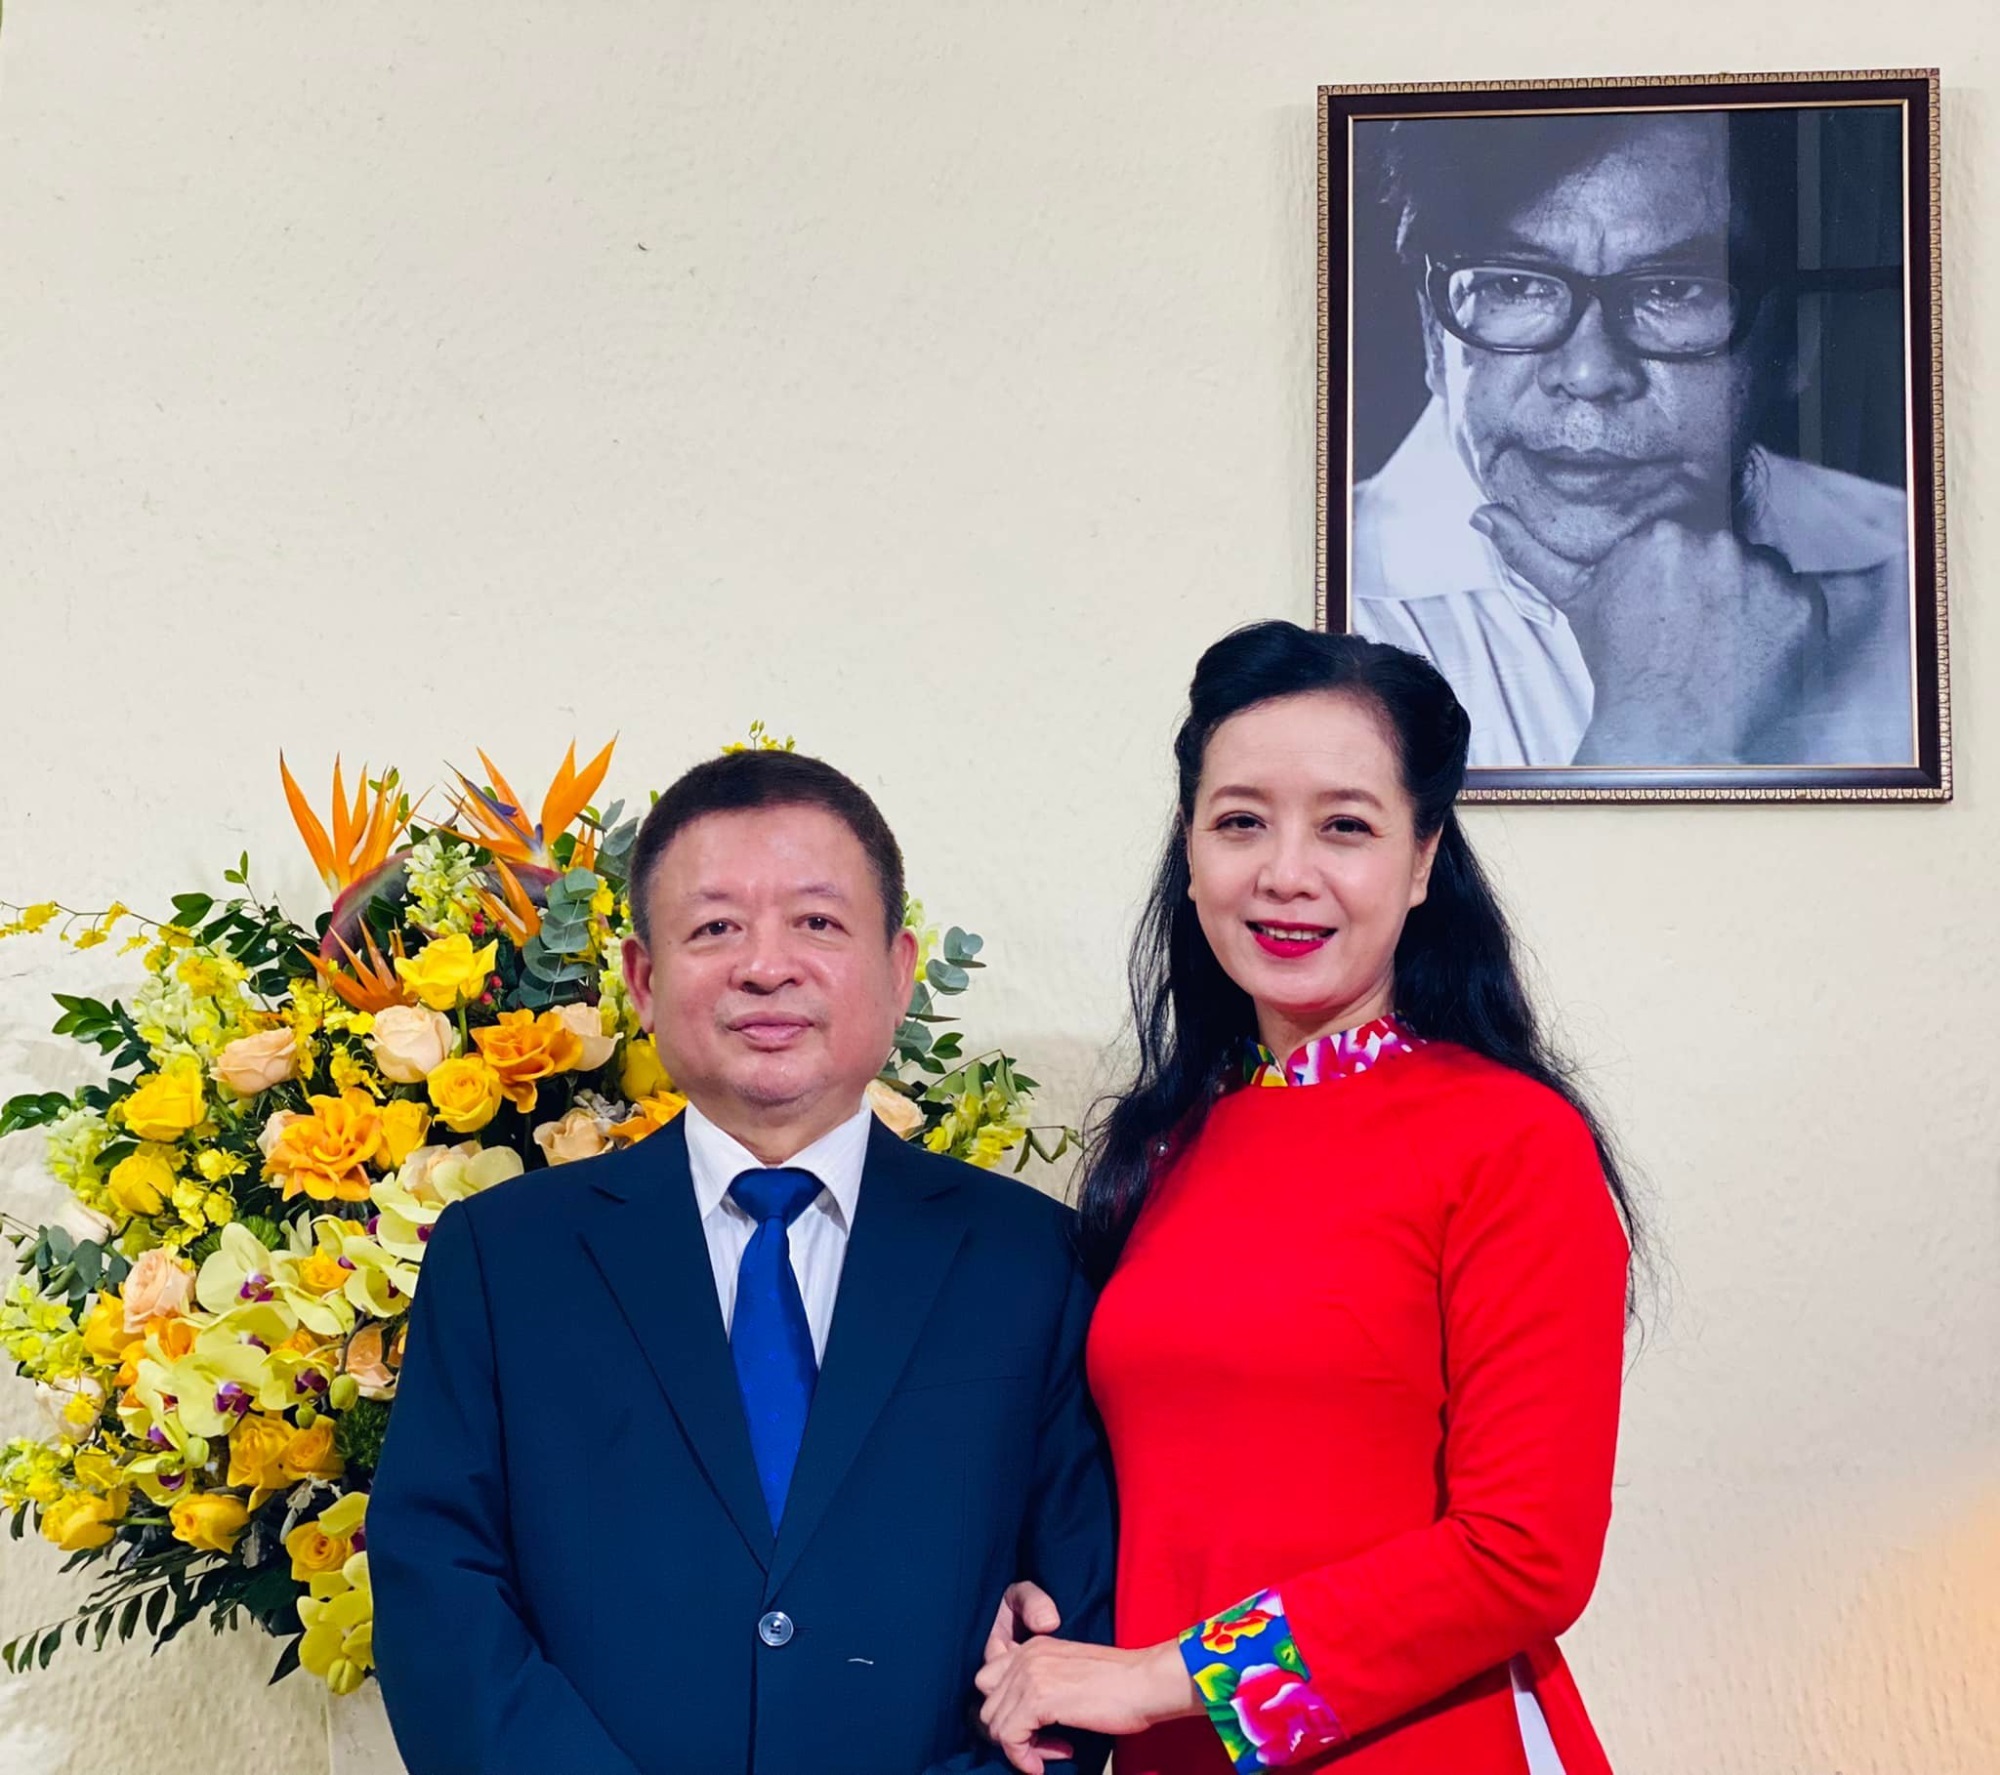 Hôn nhân gần 40 năm của nghệ sĩ Chiều Xuân: Quá viên mãn, không ngại nói lời ngọt ngào, chồng ủng hộ mọi đam mê của vợ - Ảnh 6